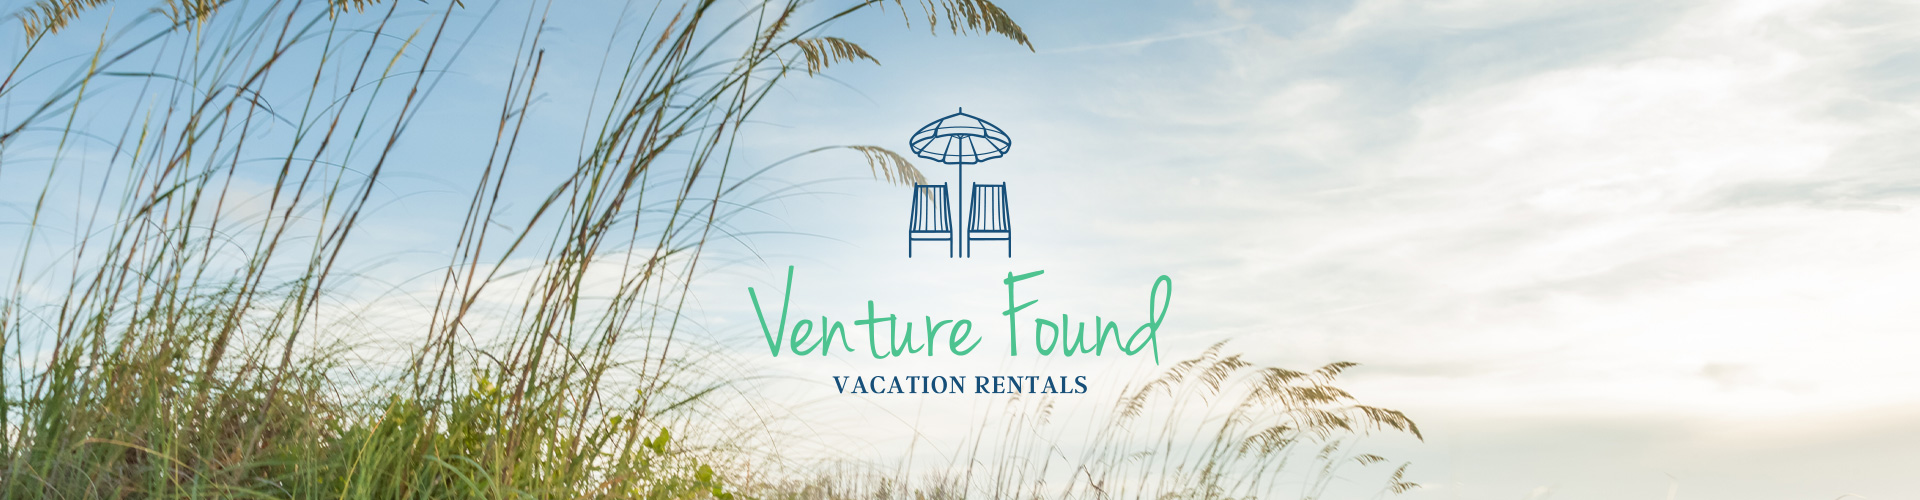 Venture Found Vacation Rentals 30A Banner